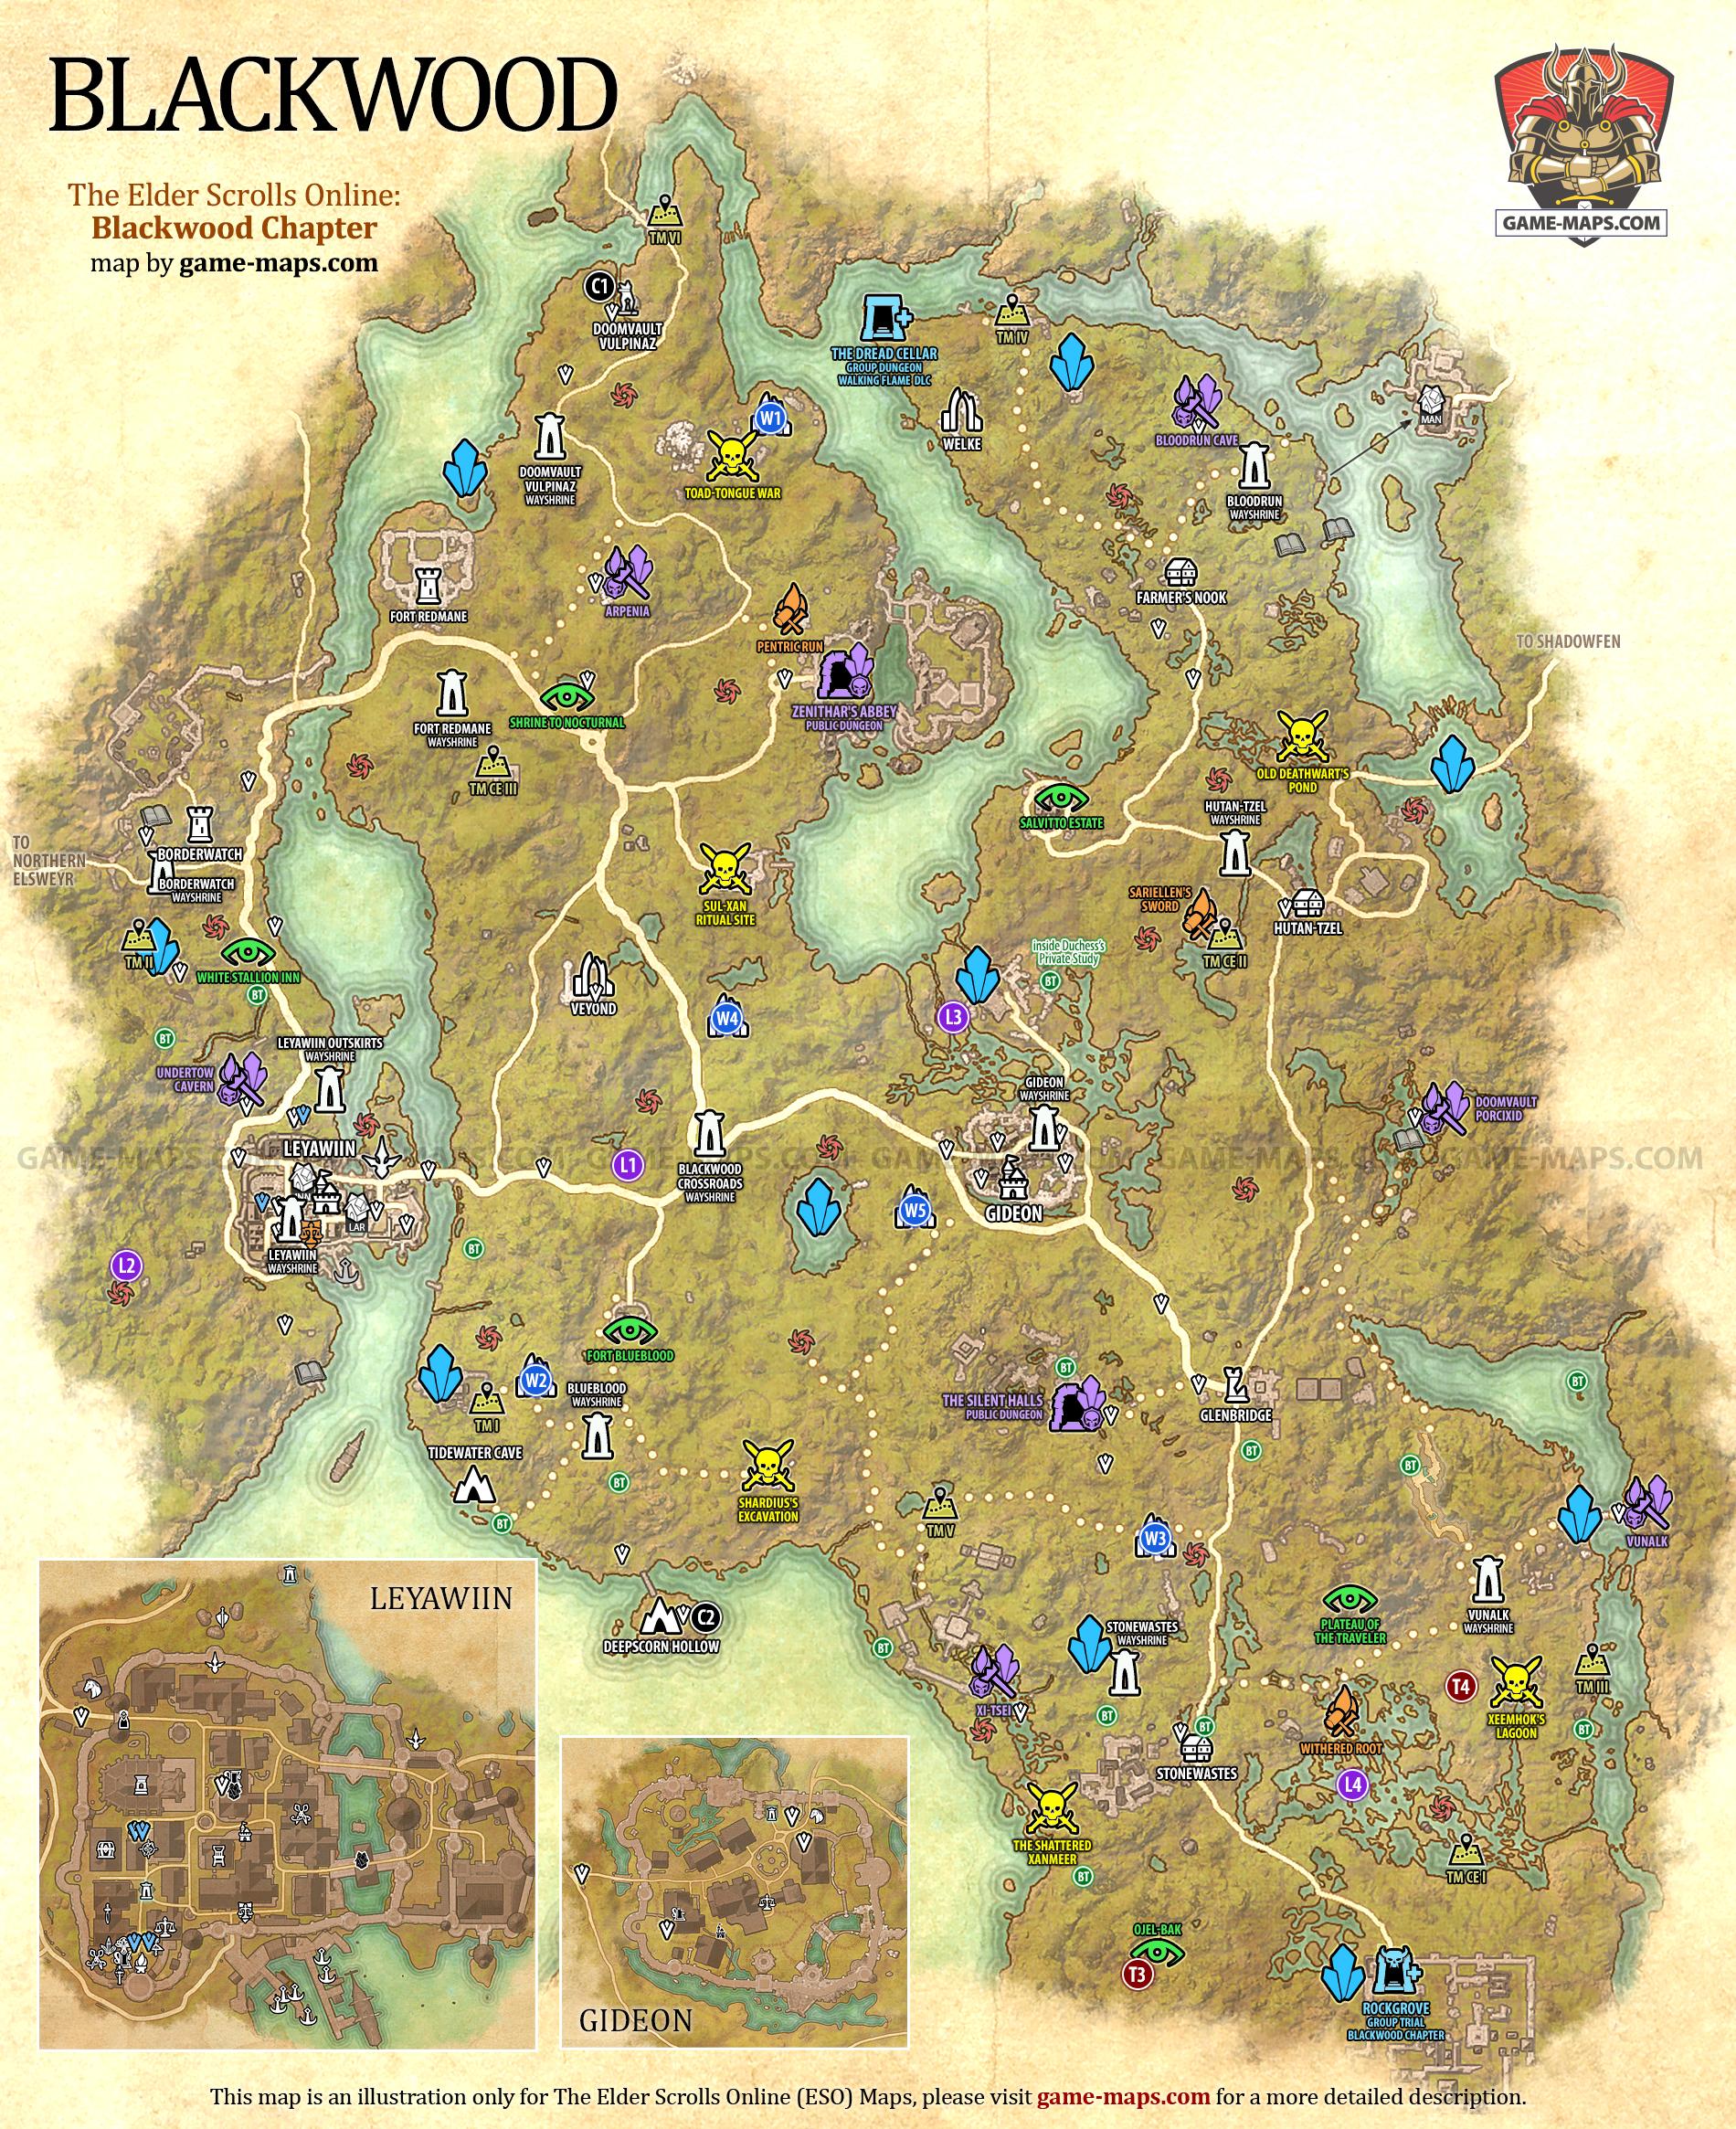 Blackwood Map for The Elder Scrolls Online: Blackwood Chapter, The Gates of Oblivion 2021 Adventure (ESO).